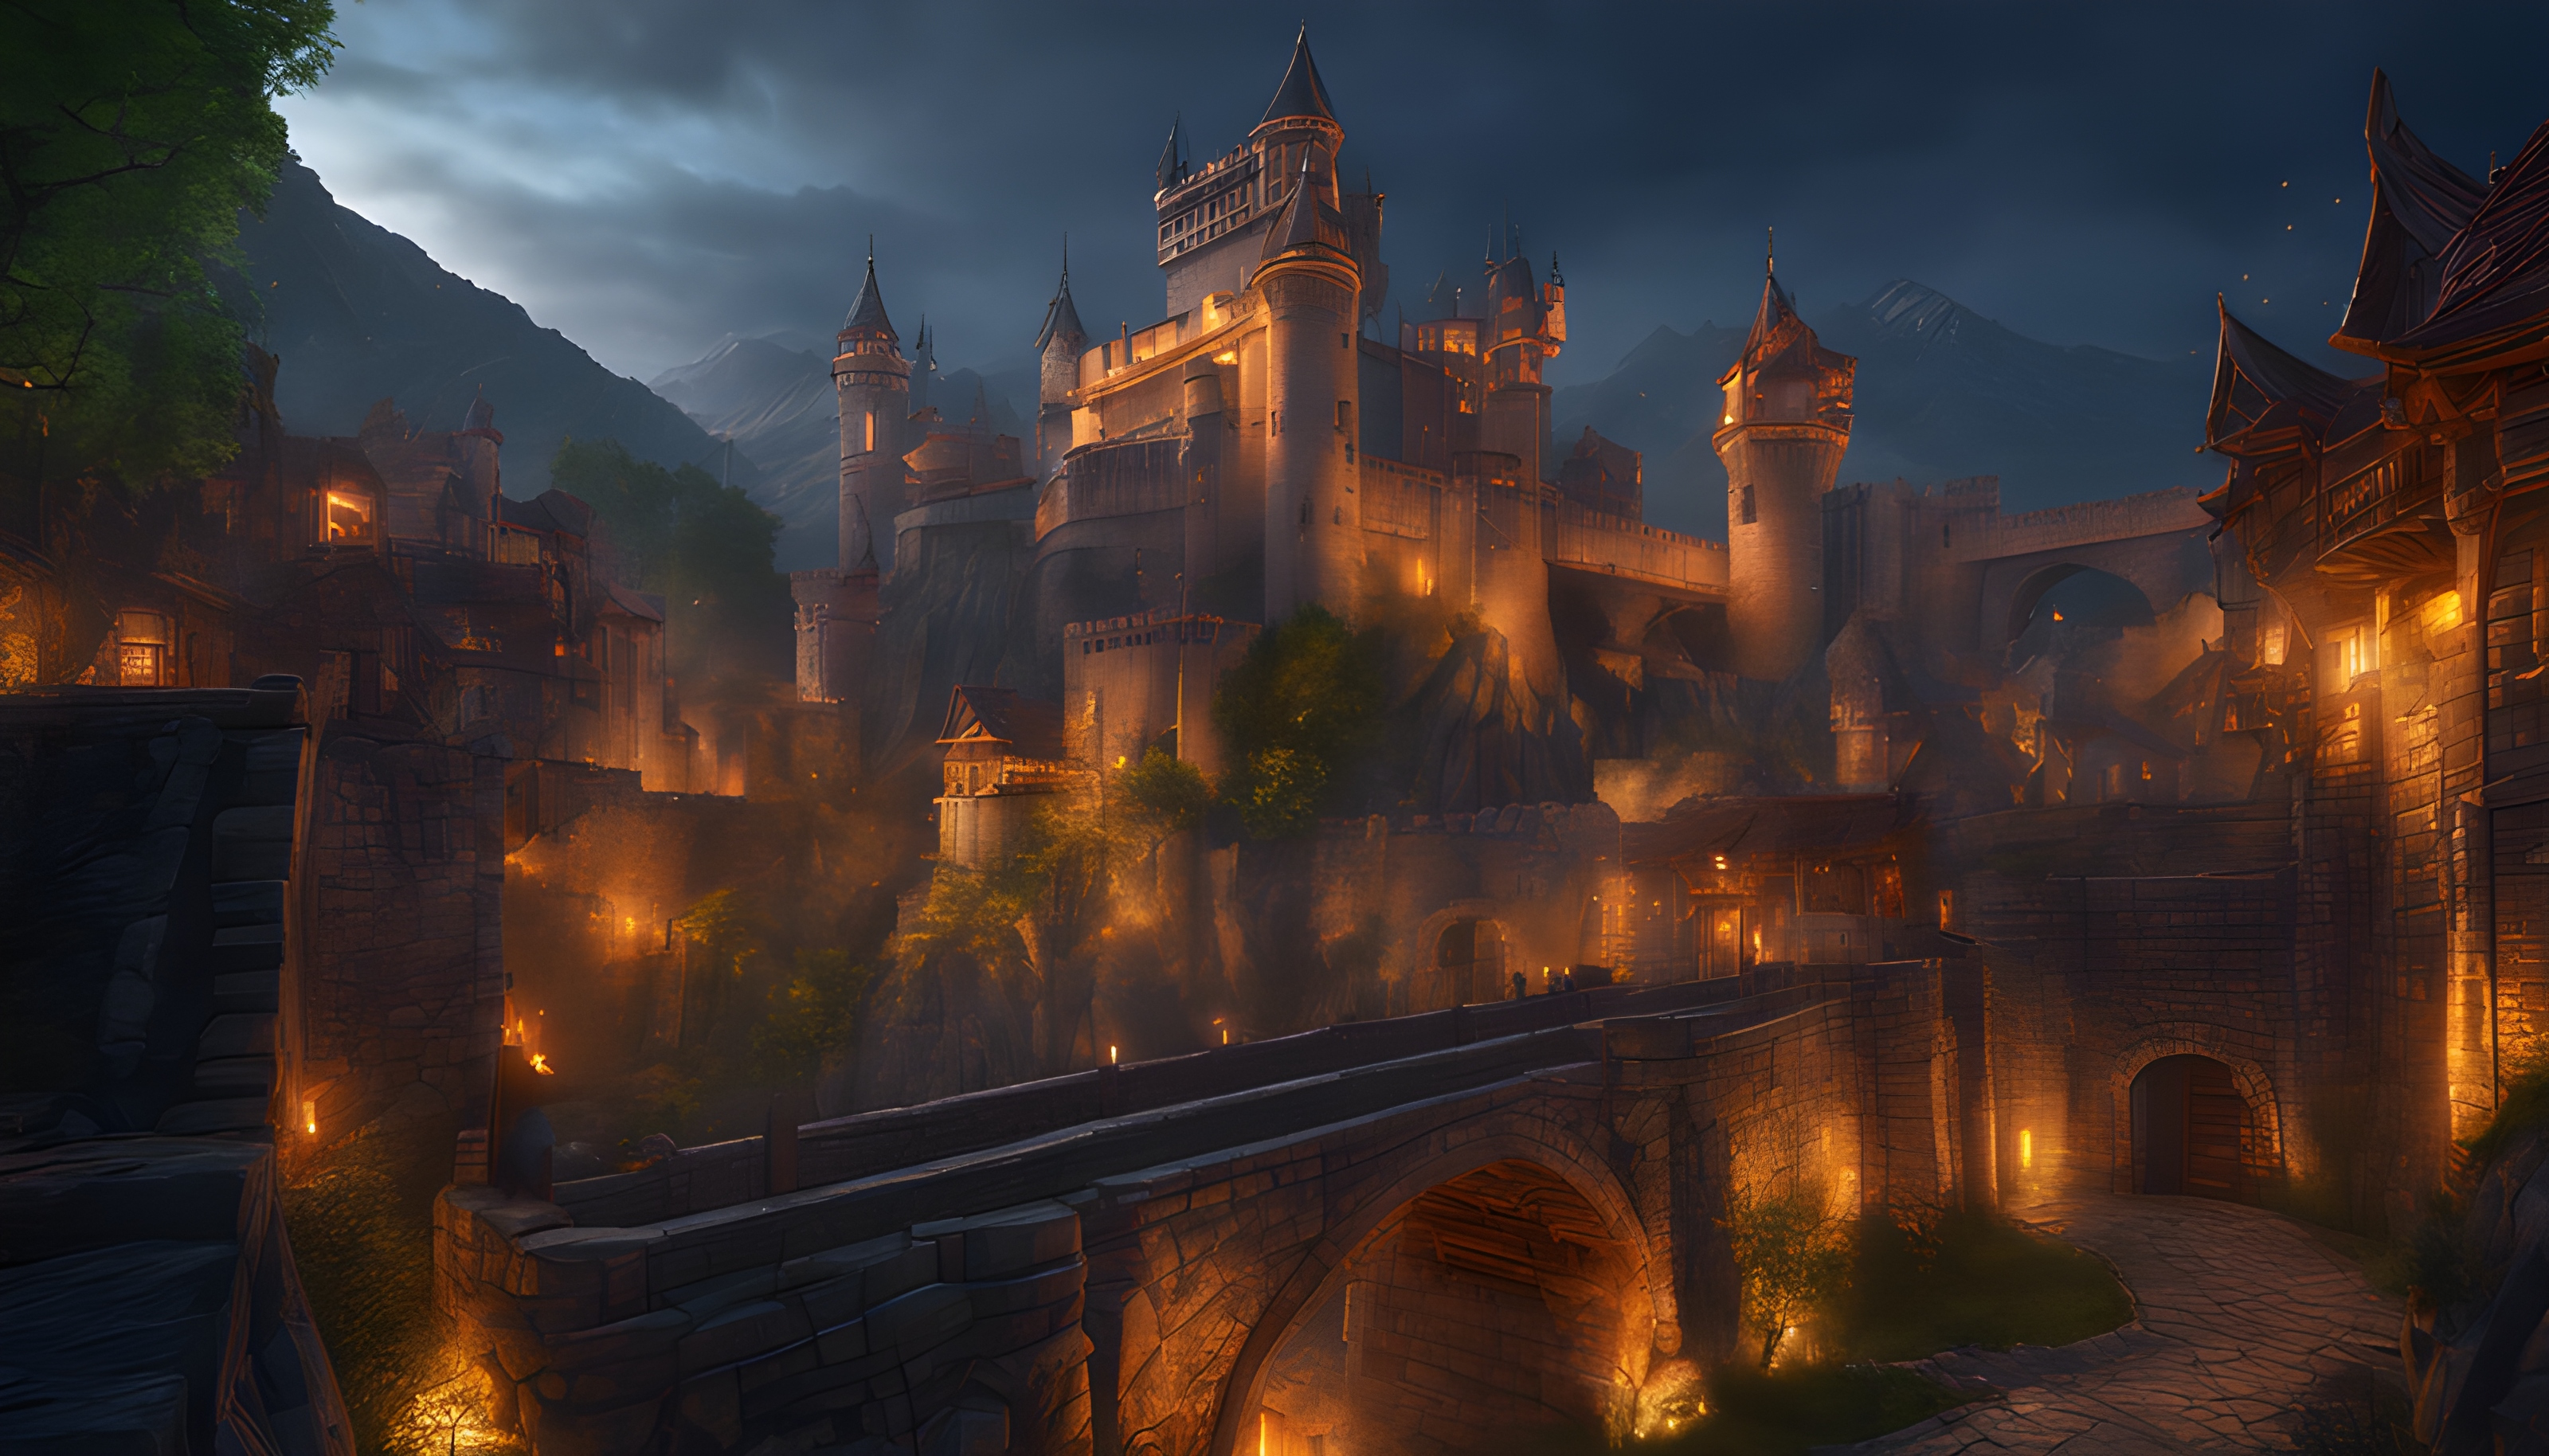 สร้างภาพ เมืองแห่งนักรบแบบเกม MMORPG แฟนตาซี เรืองแสงในตอนหลางคืน เหนือจินตนาการ ดูดุดัน สมจริง